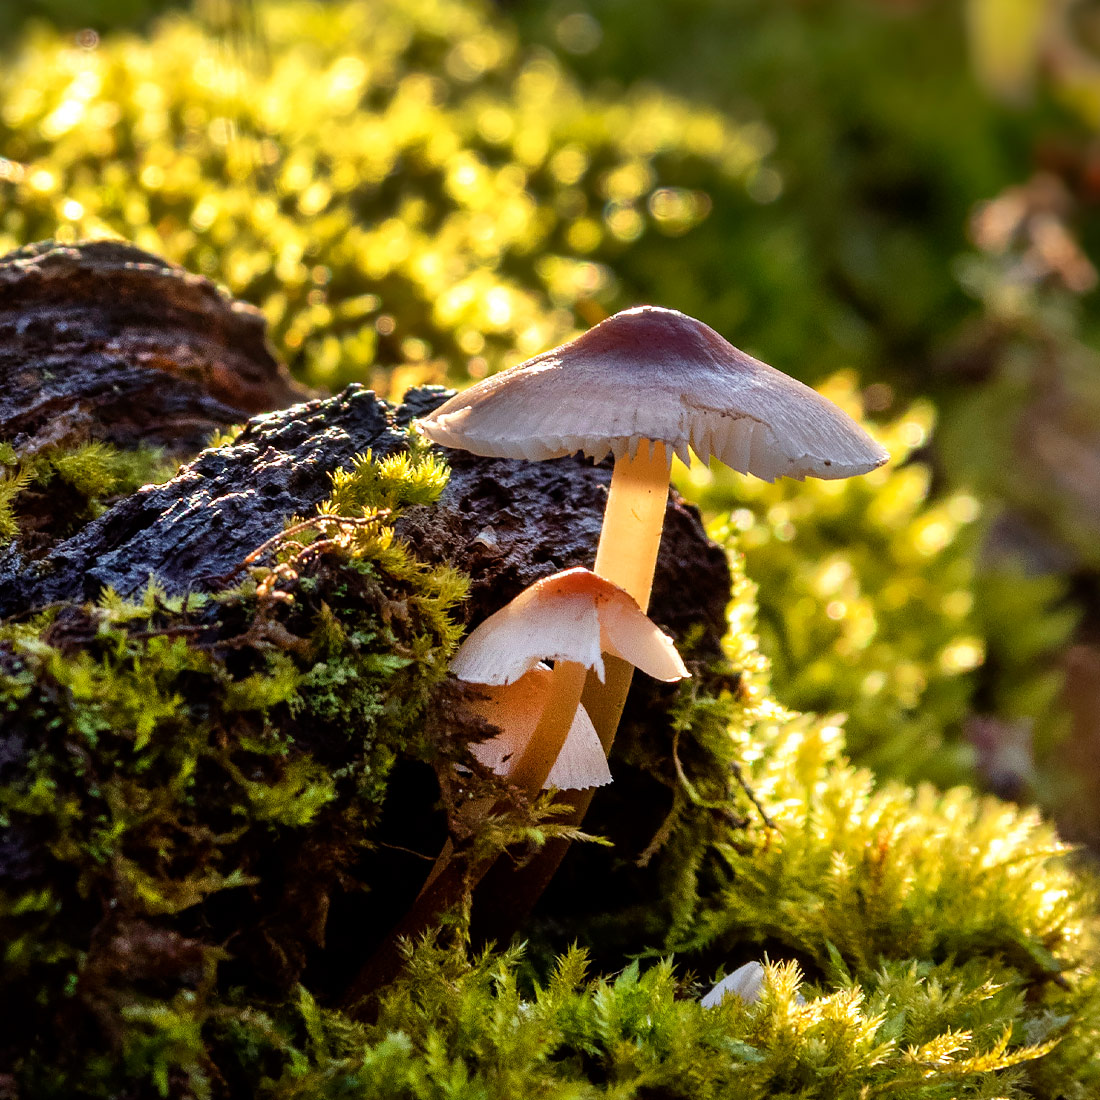 Fungi - Mushrooms